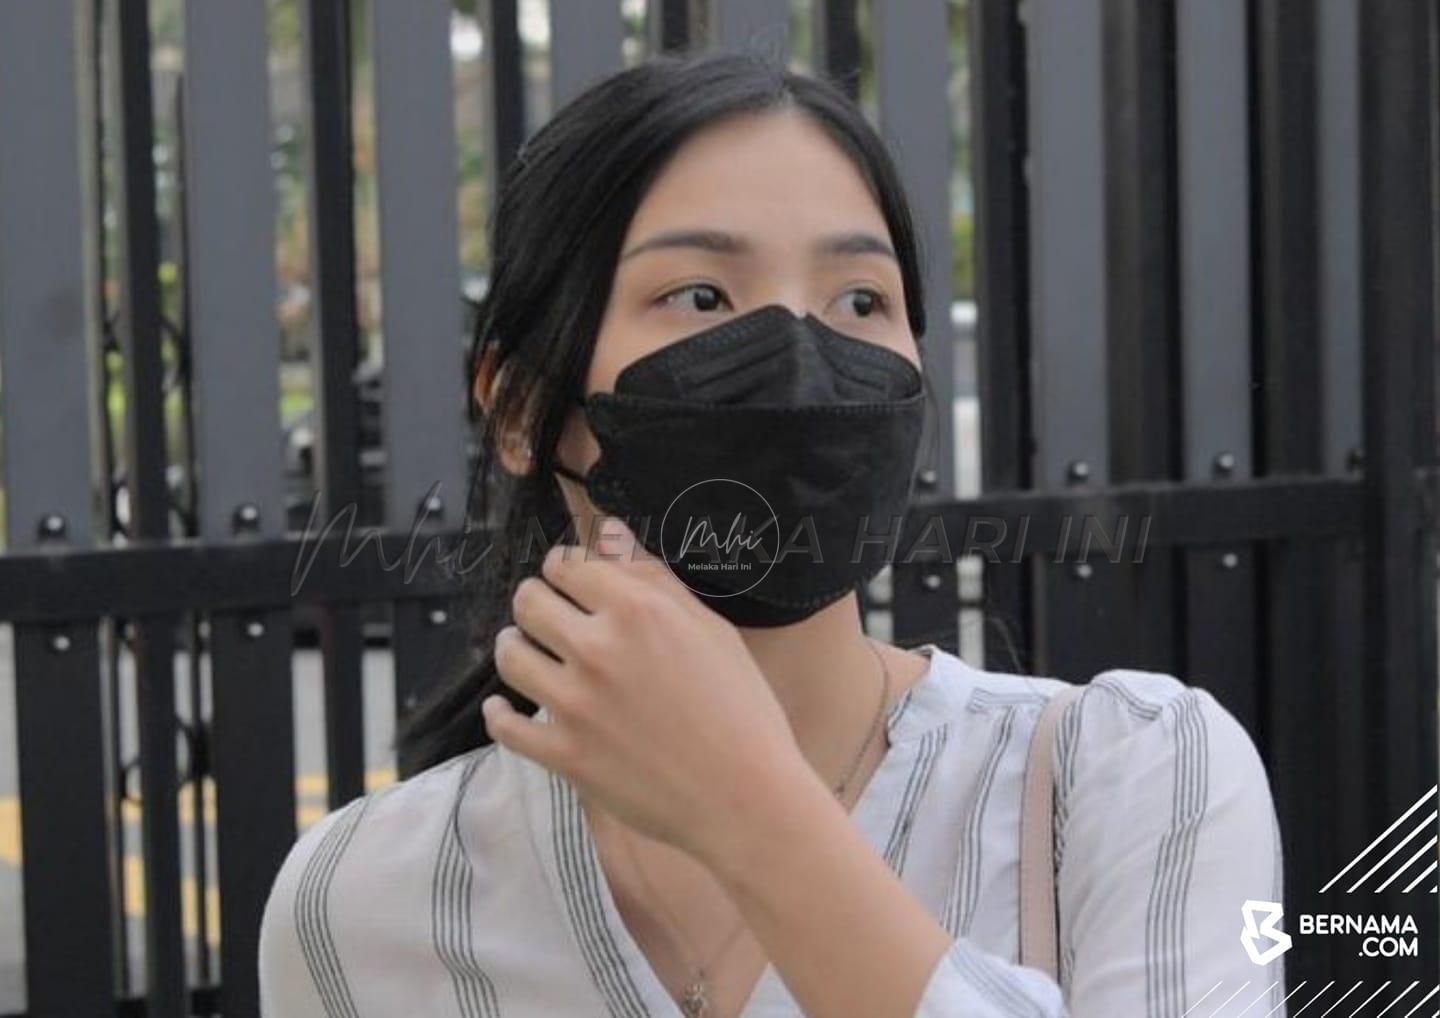 Kes lapan penunggang basikal lajak maut: Kerani dipenjara enam tahun, denda RM6,000